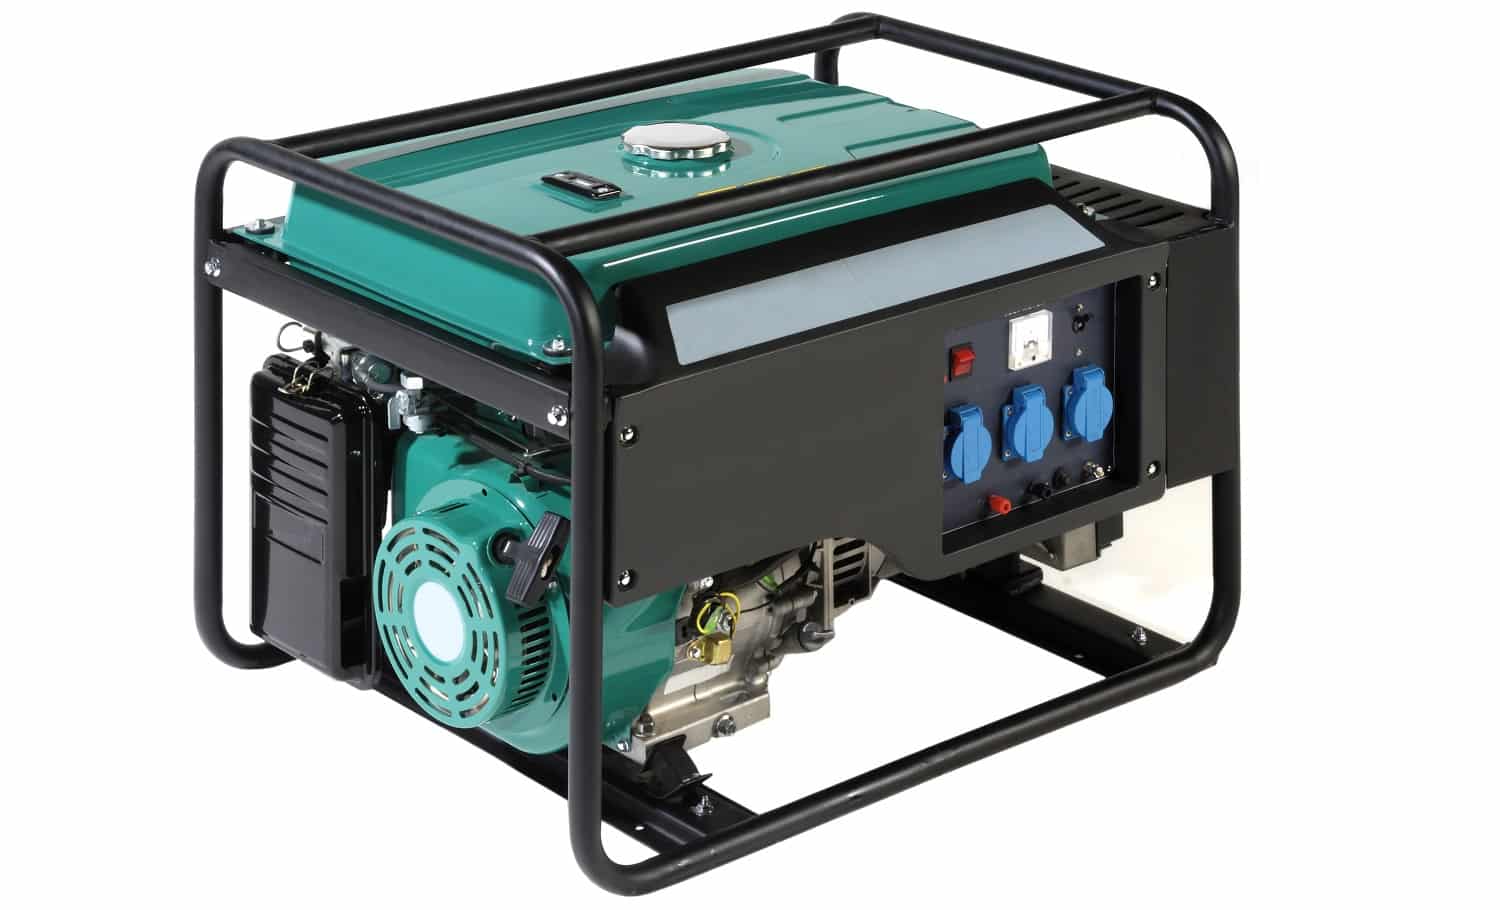 Portable Power generator (Fuel)